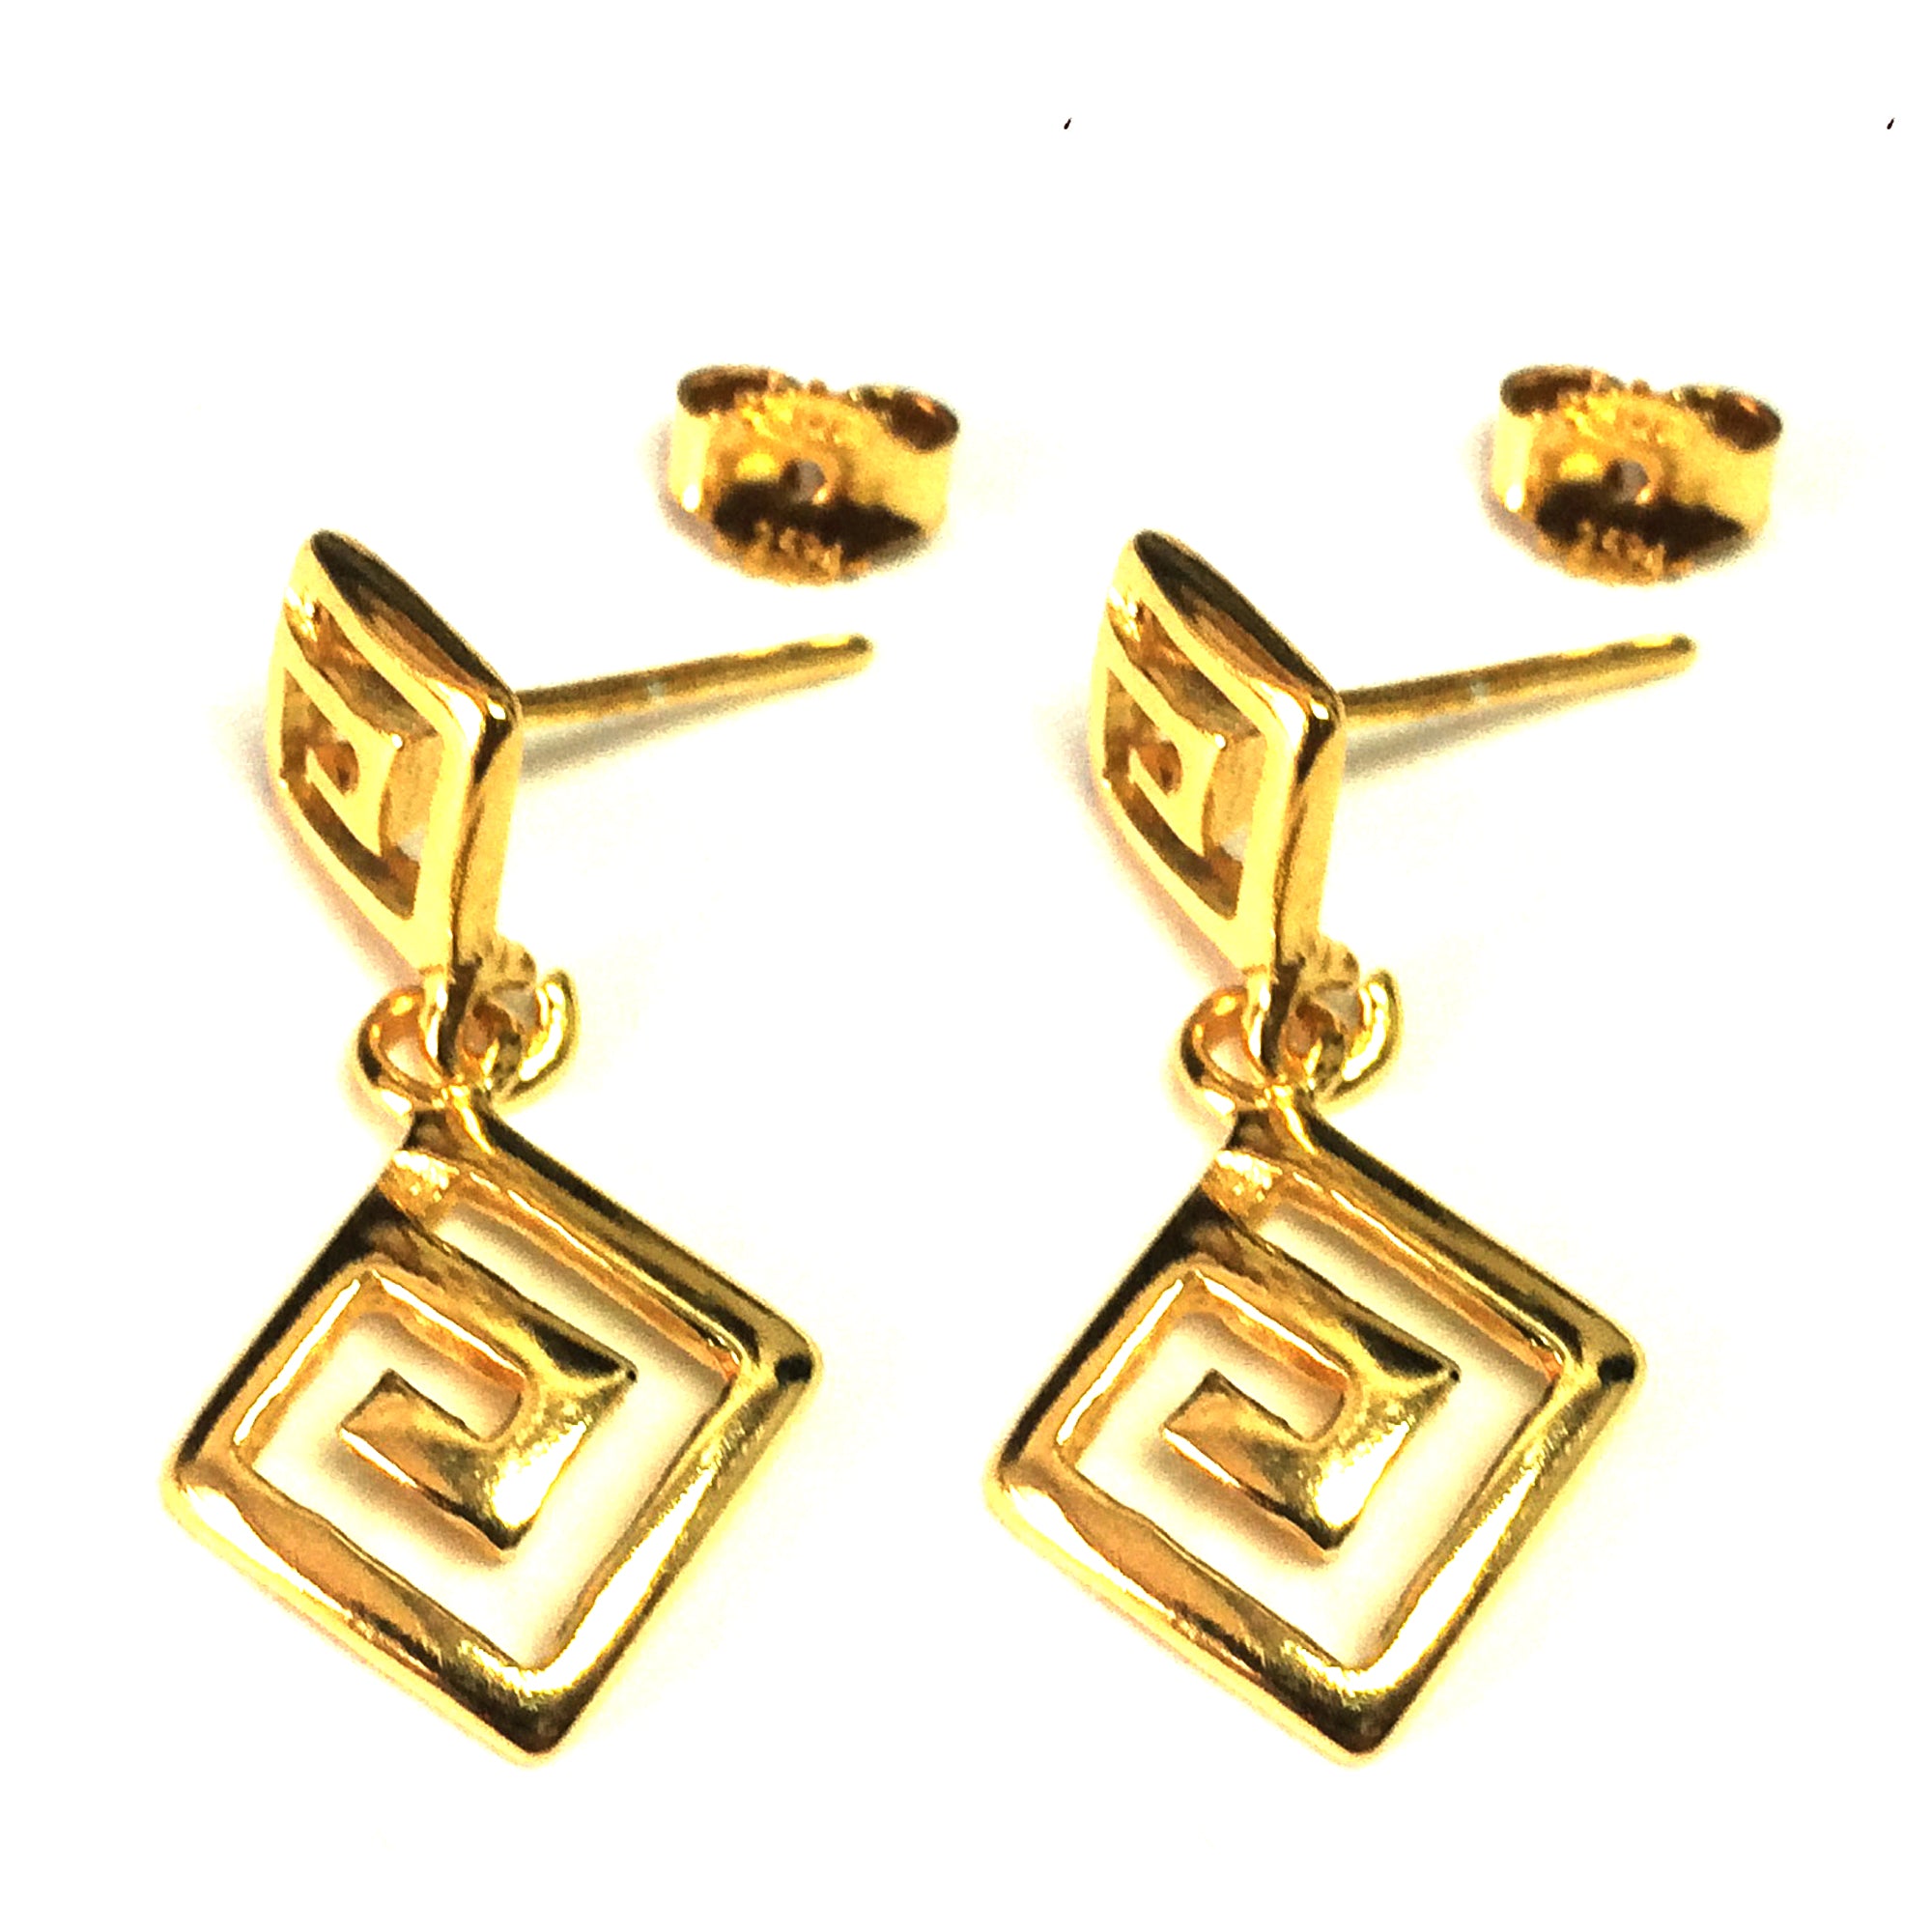 Ohrhänger mit griechischem Schlüssel aus Sterlingsilber mit 18 Karat Goldauflage, 12 x 27 mm, feiner Designerschmuck für Männer und Frauen